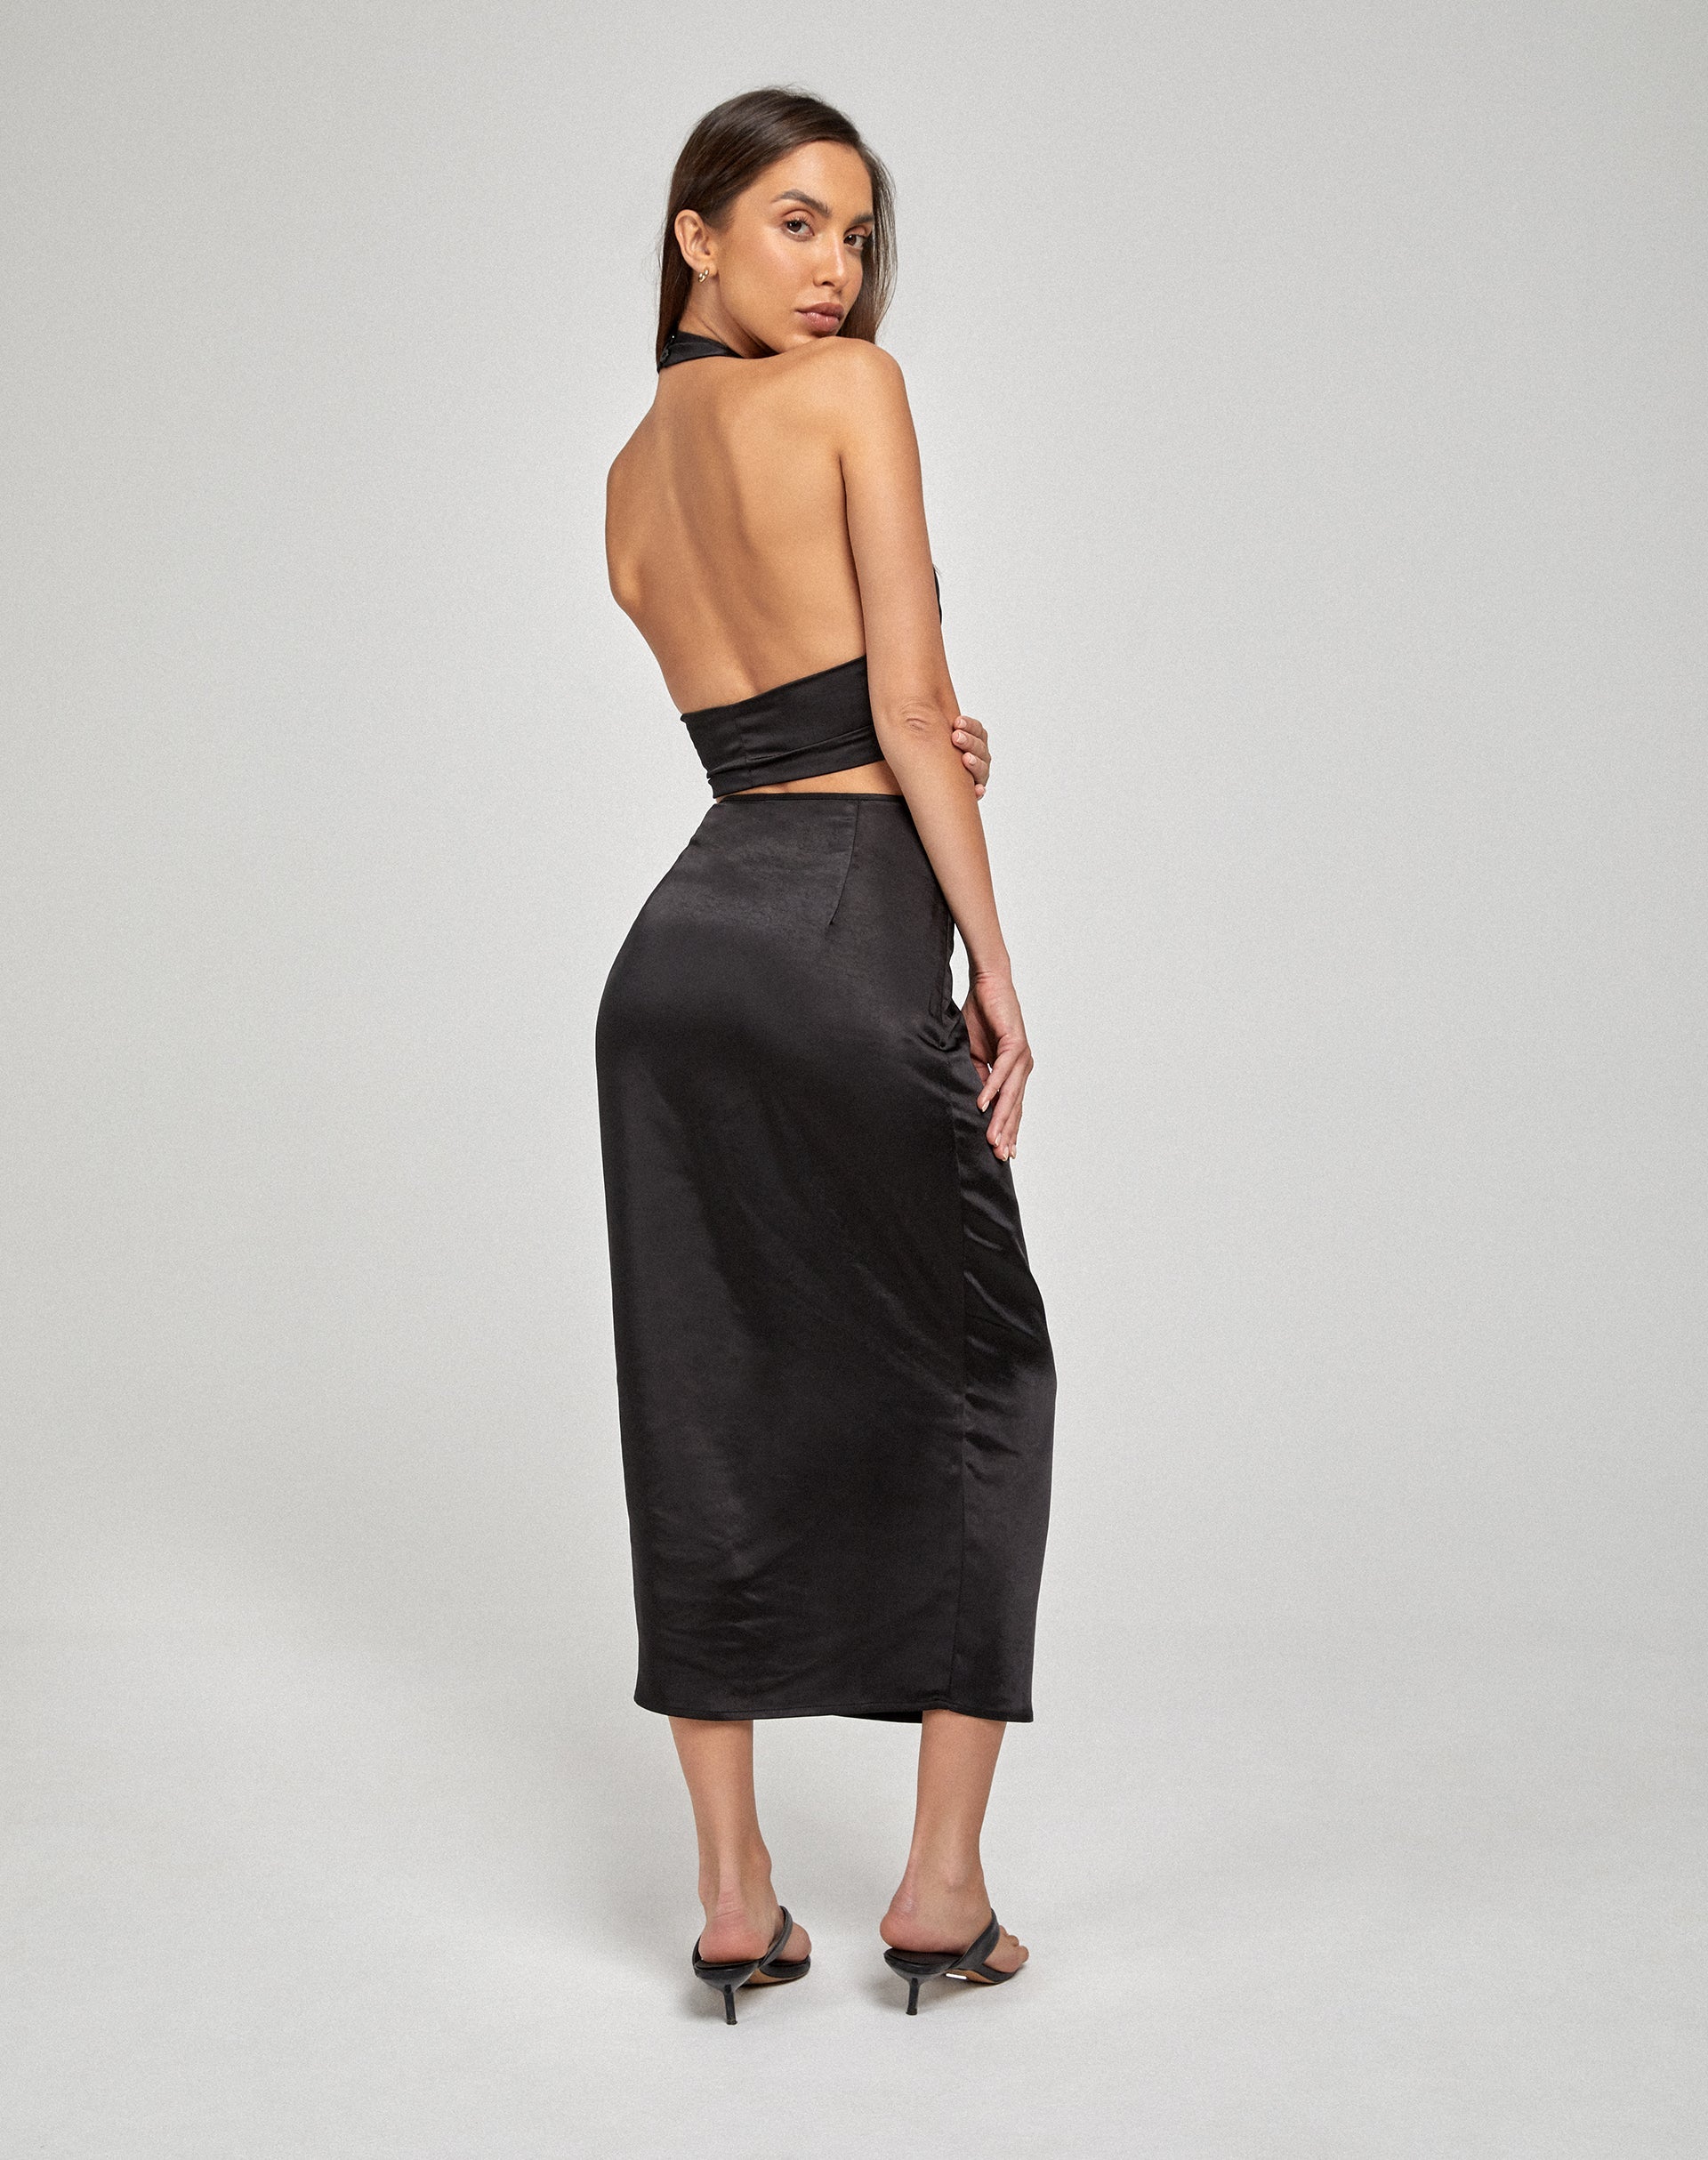 image of Gardy Midi Skirt in Satin Black